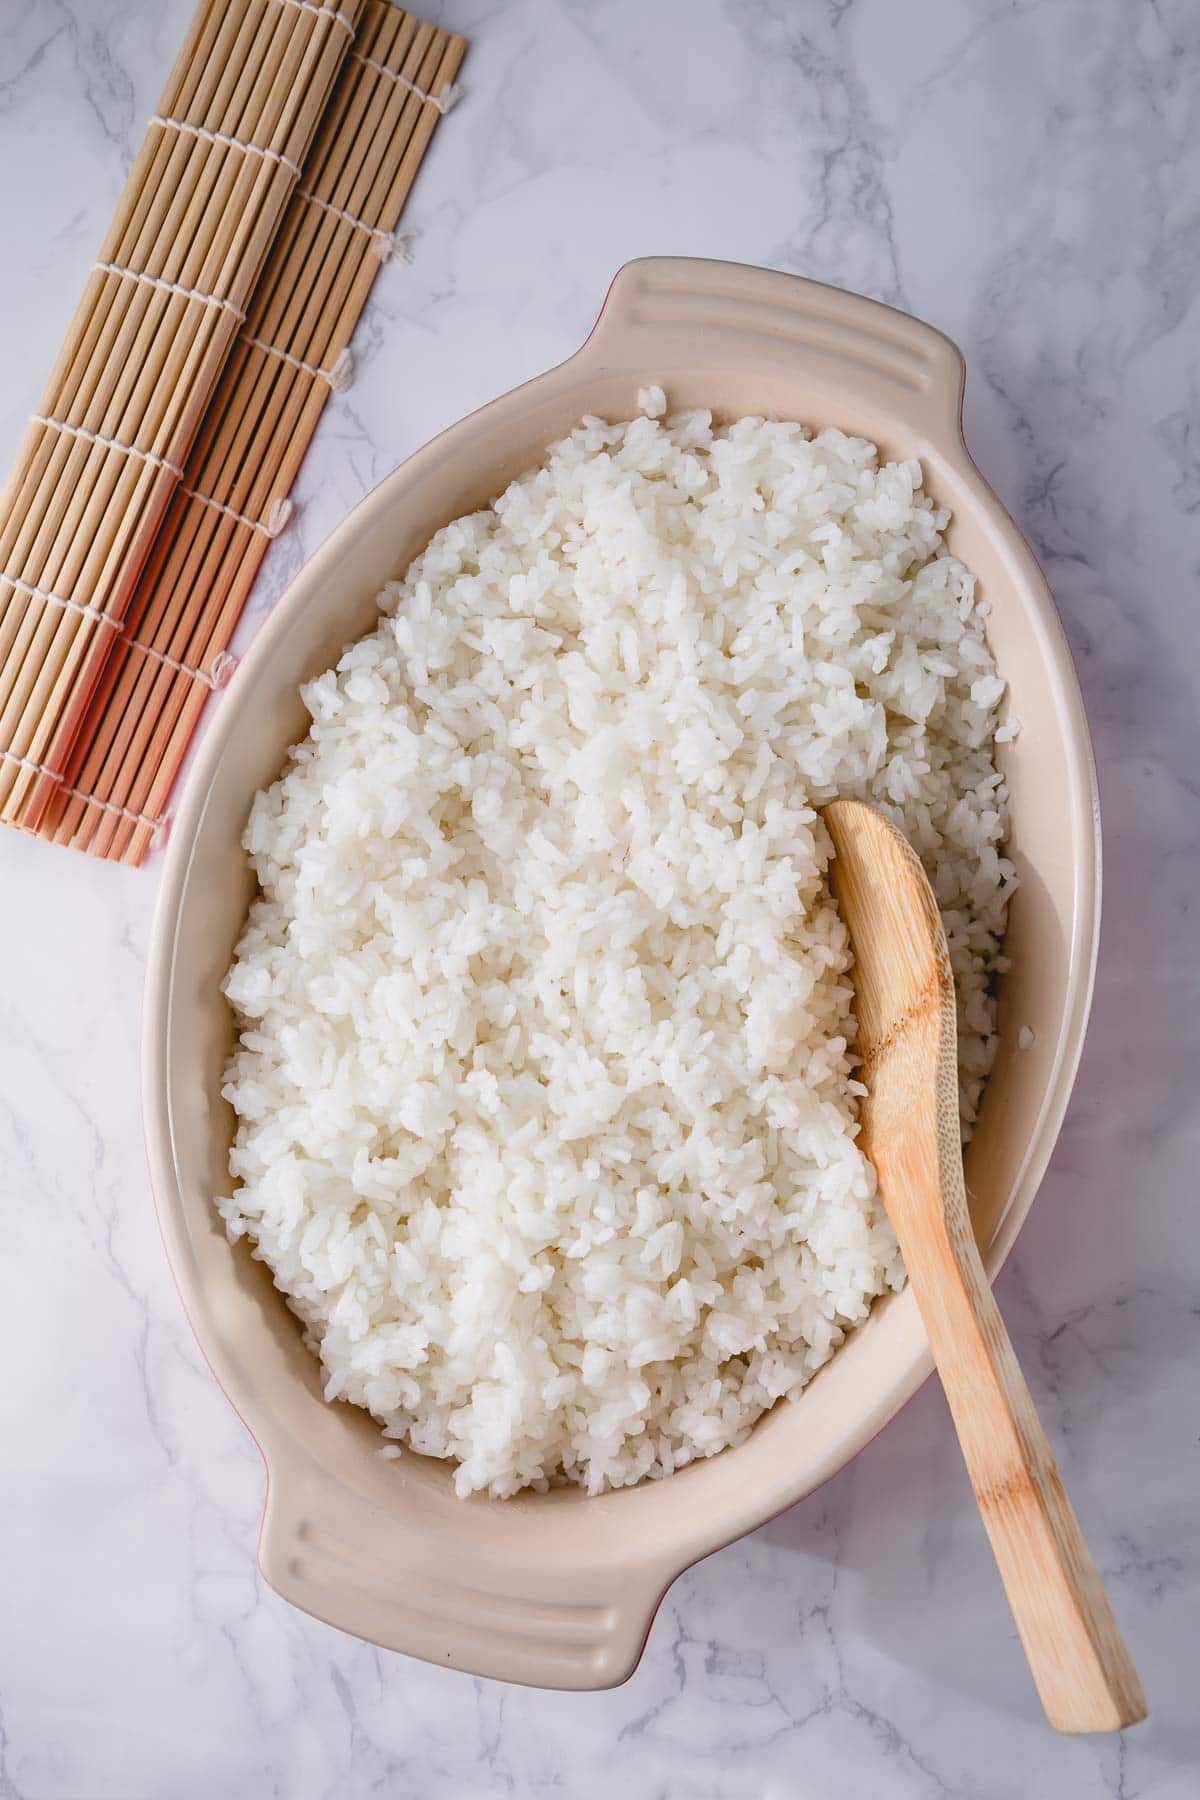 https://www.sweetandsavorybyshinee.com/wp-content/uploads/2021/06/Sushi-Rice-1.jpg